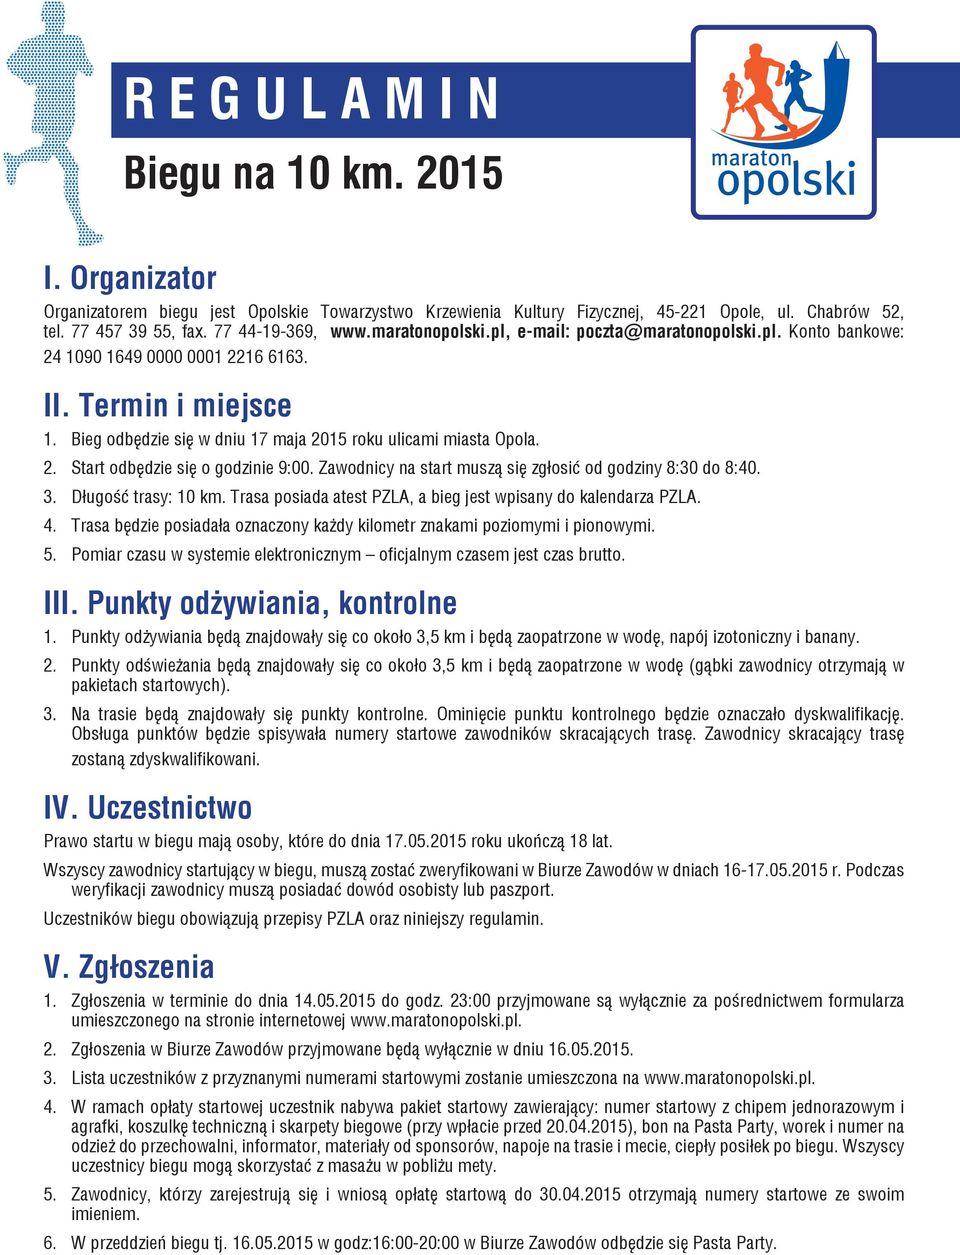 Bieg odbędzie się w dniu 17 maja 2015 roku ulicami miasta Opola. 2. Start odbędzie się o godzinie 9:00. Zawodnicy na start muszą się zgłosić od godziny 8:30 do 8:40. 3. Długość trasy: 10 km.